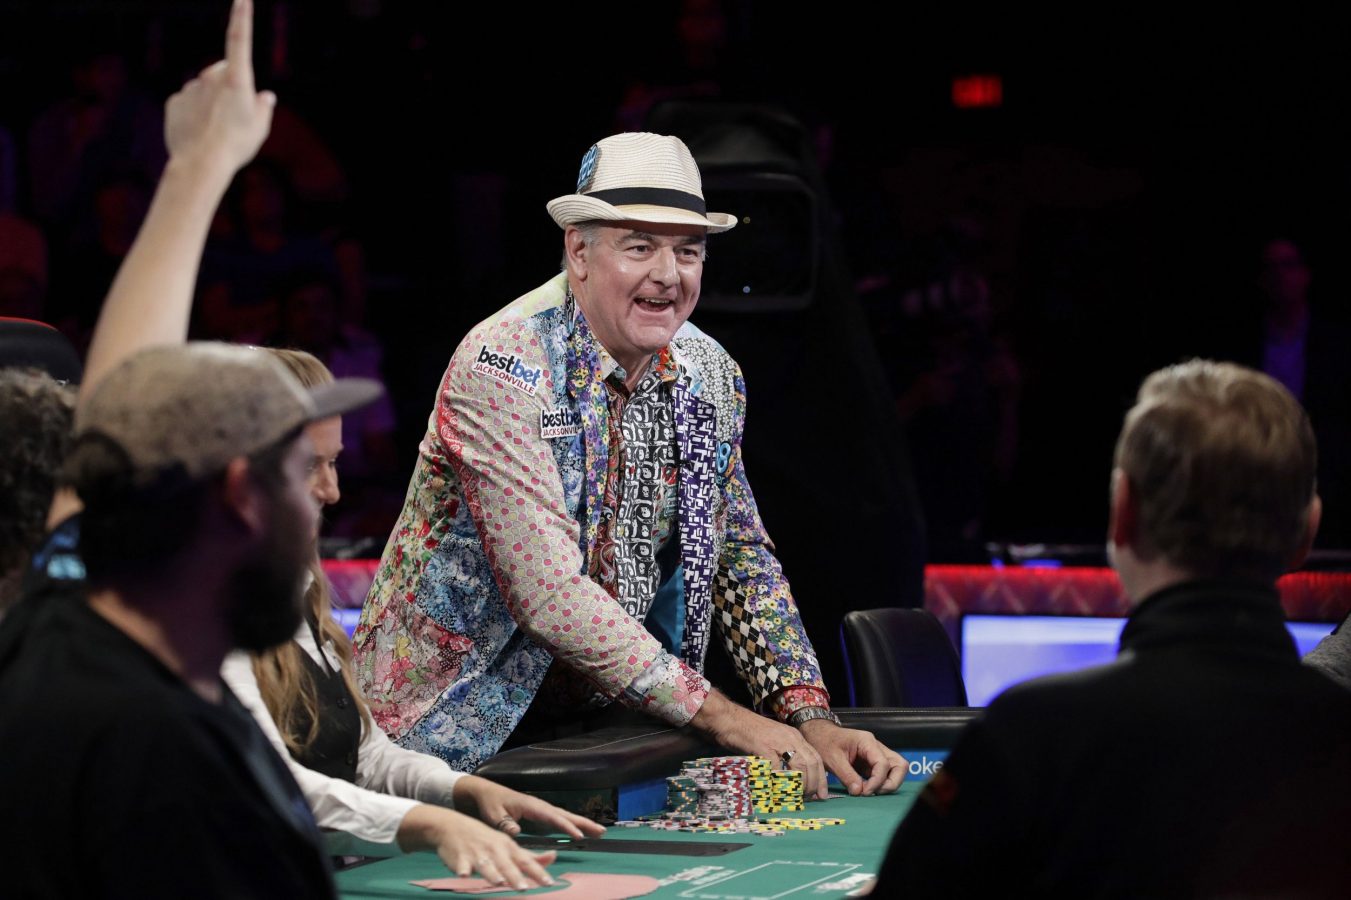 Temui pemain amatir John Hesp yang menantang peluang untuk memenangkan £ 2 juta di World Series of Poker